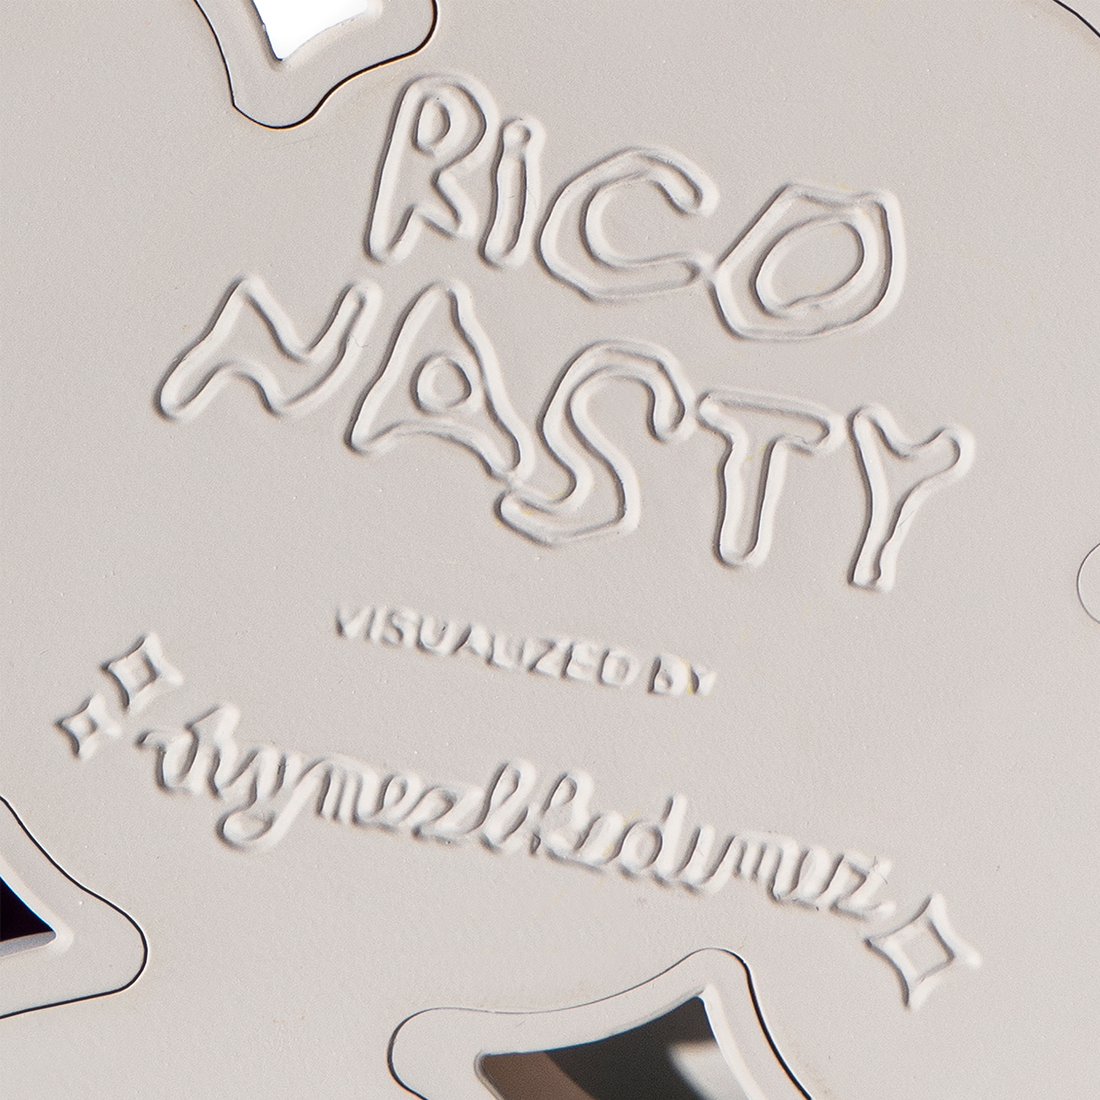 Rico Nasty x Rhymezlikedimez Collectable Figurine